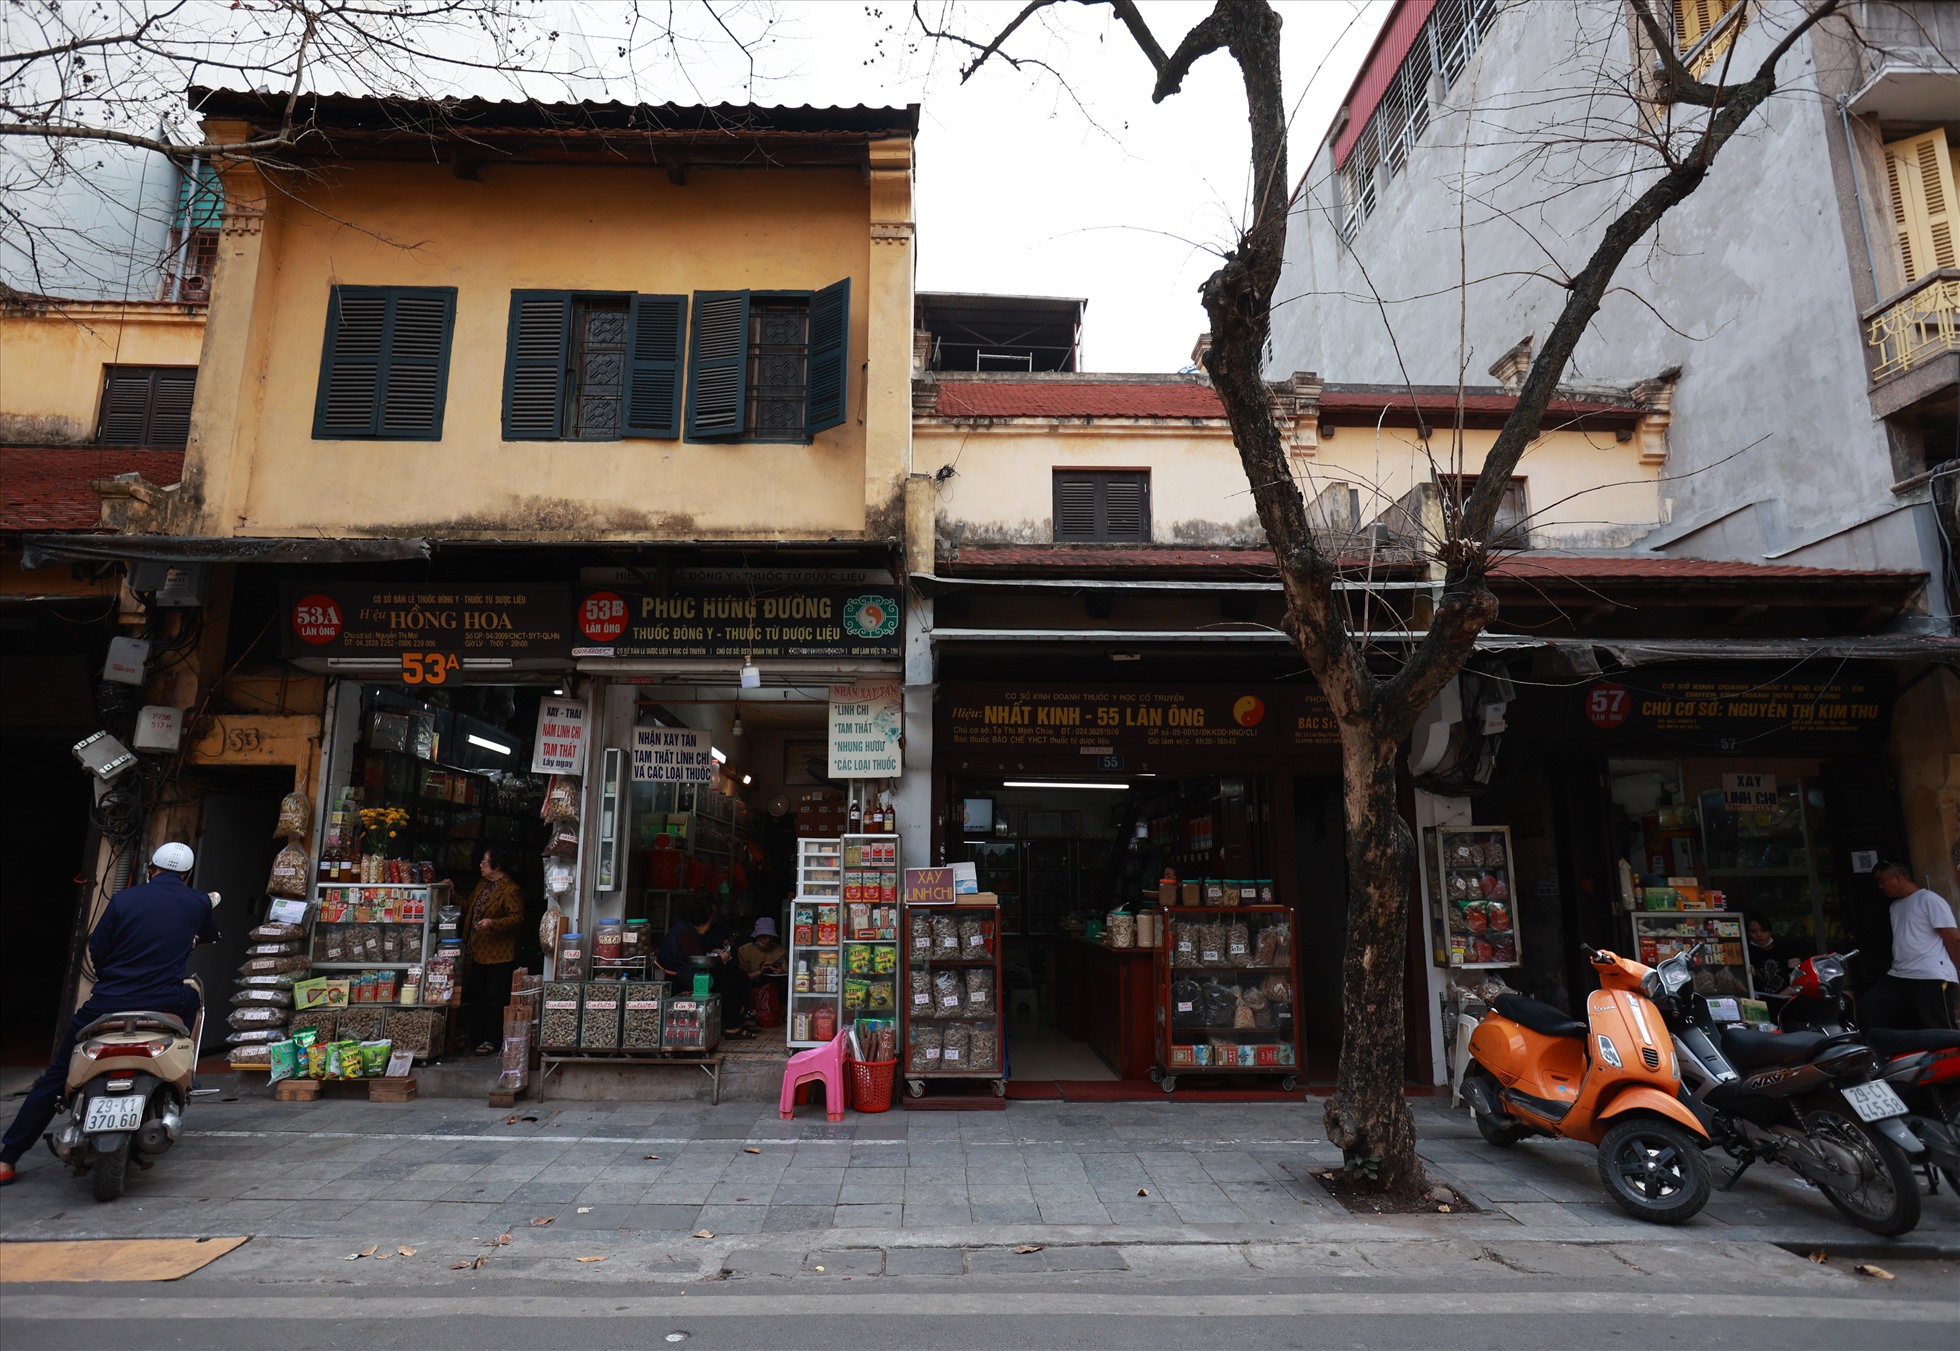 Phố Lãn Ông là một con phố nổi tiếng tại Hà Nội, với bề dày lịch sử lâu đời và nghề truyền thống chủ đạo là kinh doanh thuốc đông y với hơn 70 cửa hàng thuốc. Ảnh: Hải Nguyễn